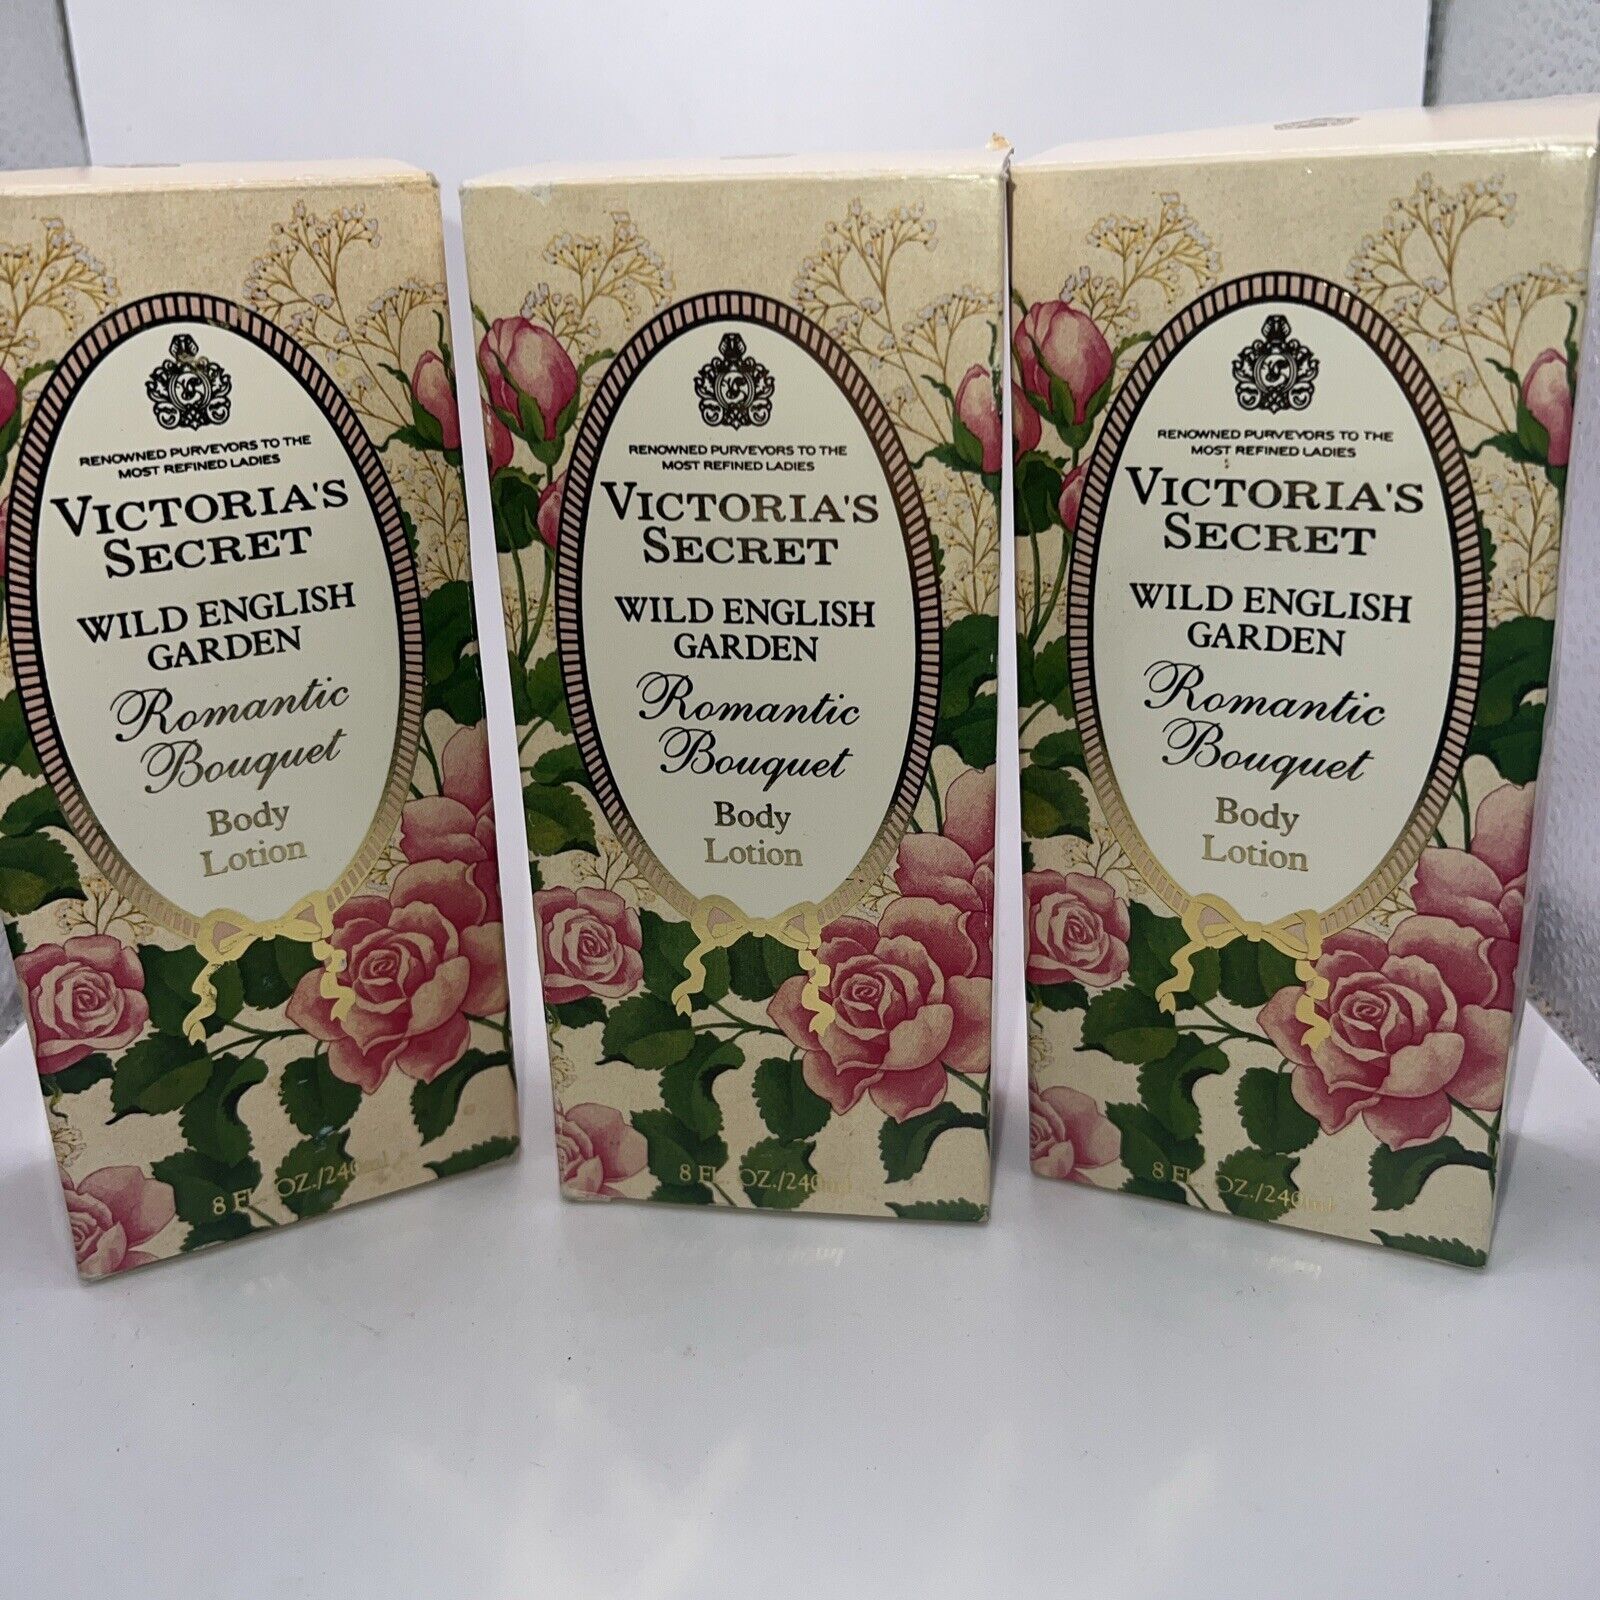 3 Vintage Victoria’s Secret Wild English Garden, Romantic Bouquet  Body Lotion